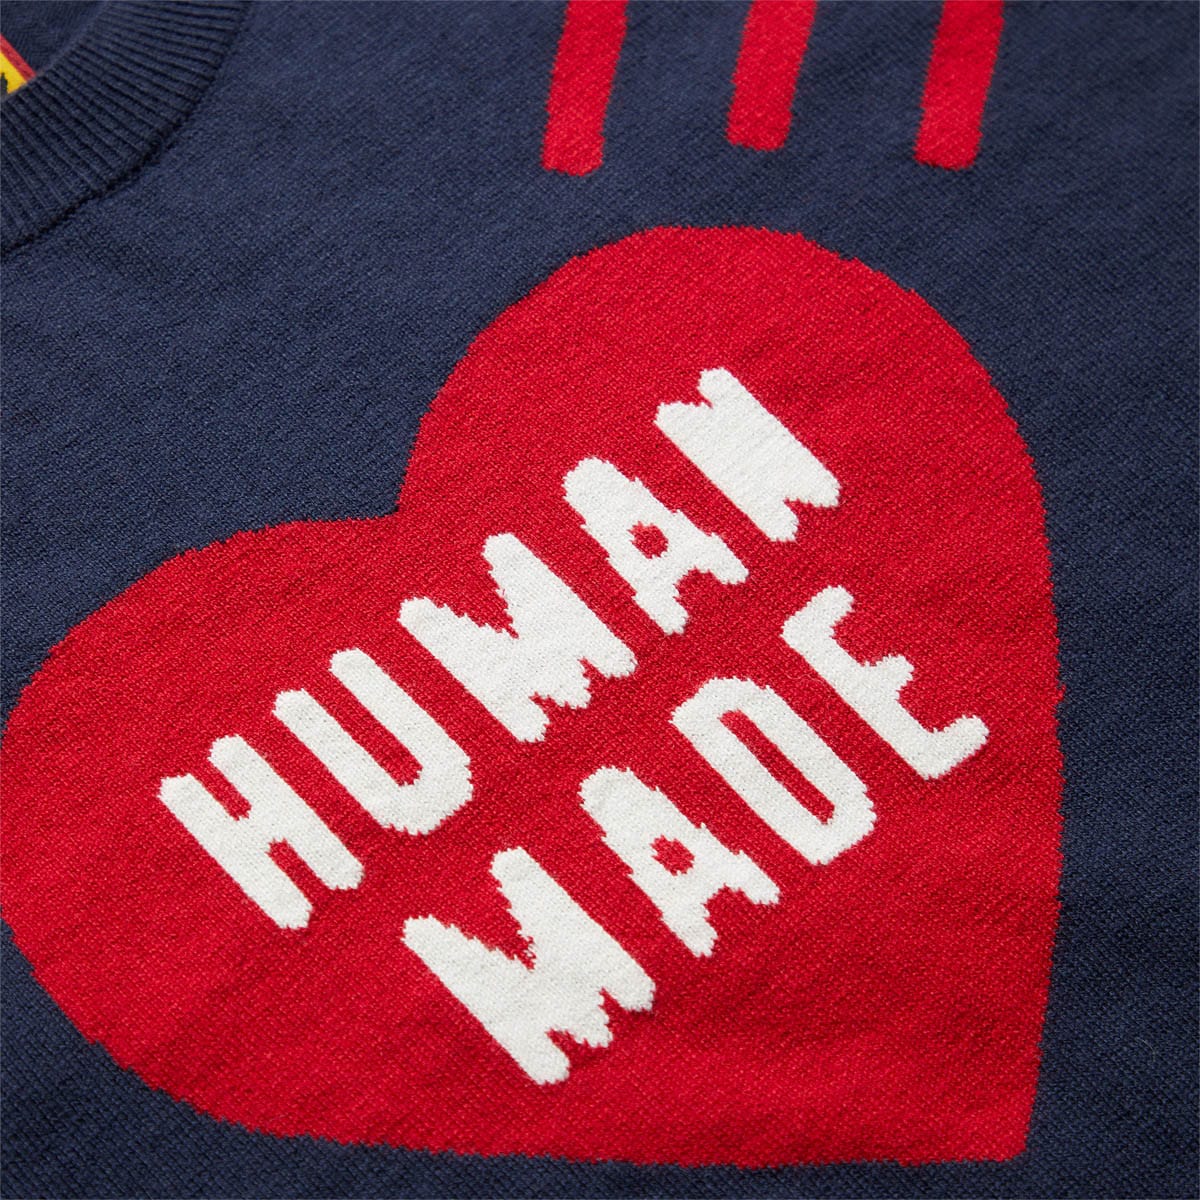 Human Made Knitwear HEART KNIT L/S